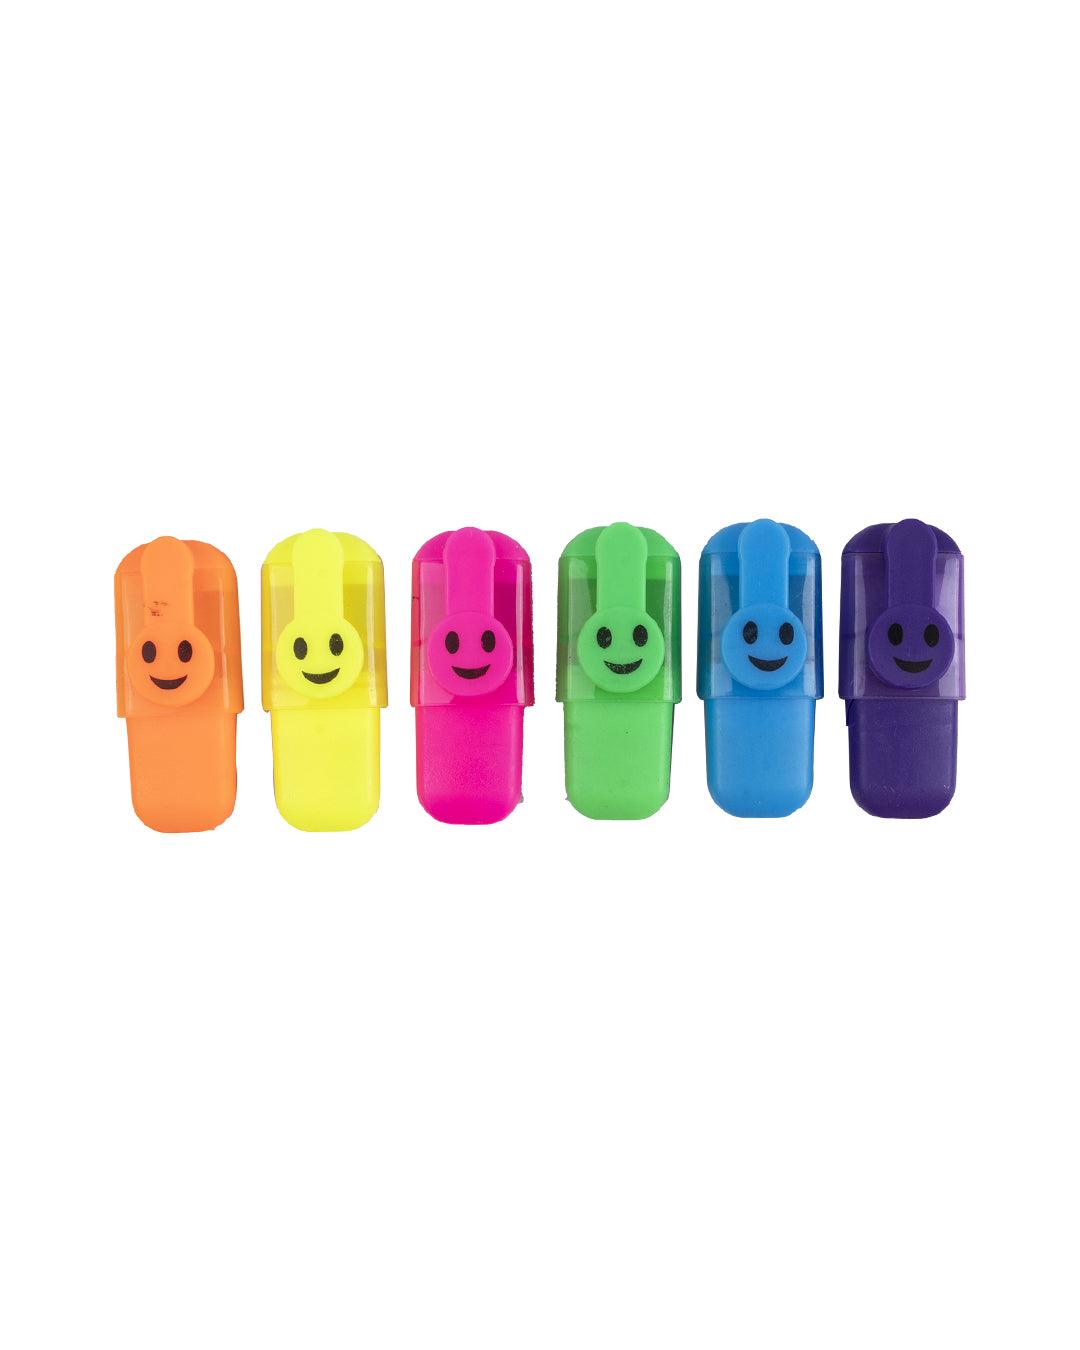 Highlighter Pens for Kid, Multicolour, Plastic, Set of 6 - MARKET 99